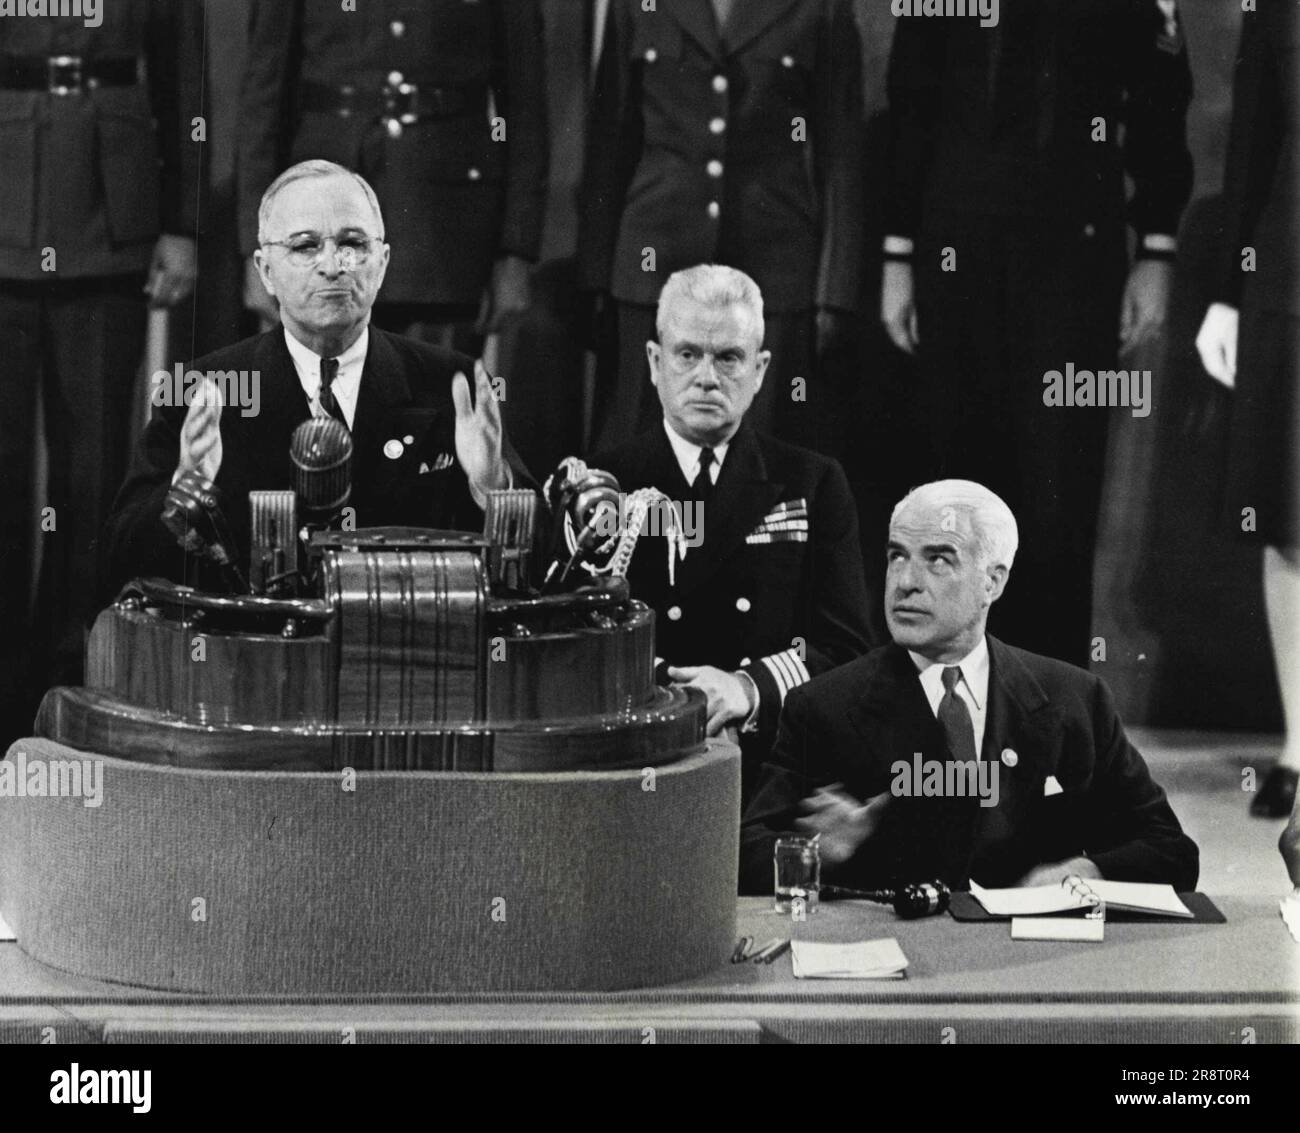 Discorso di Truman sessione conclusiva -- il Presidente Truman (on rostrum) si rivolge alla sessione conclusiva della conferenza delle Nazioni Unite a San Francisco, 26 giugno. A sinistra di Truman c'è il Segretario di Stato Stettinius e dietro Stetinius c'è il Capitano James K. Vardman, Naval Aide. Giugno 26, 1945. (Foto per foto stampa associata). Foto Stock